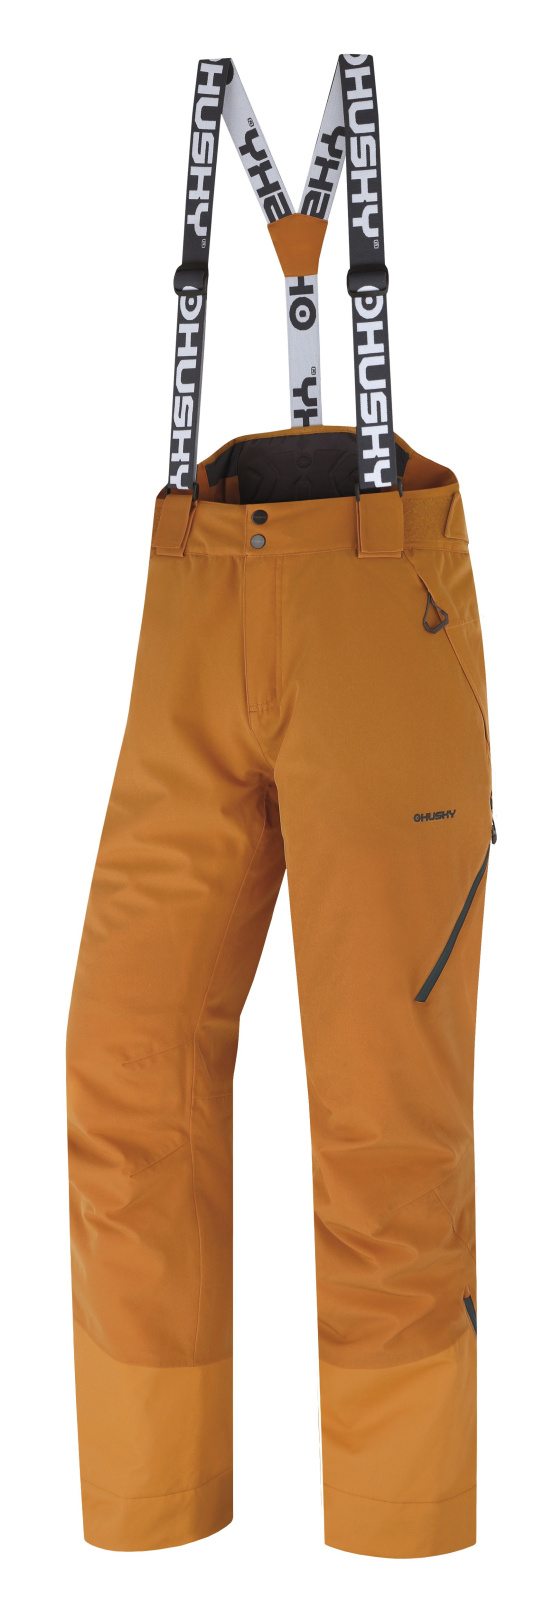 Husky Pánské lyžařské kalhoty Mitaly M mustard Velikost: M pánské kalhoty